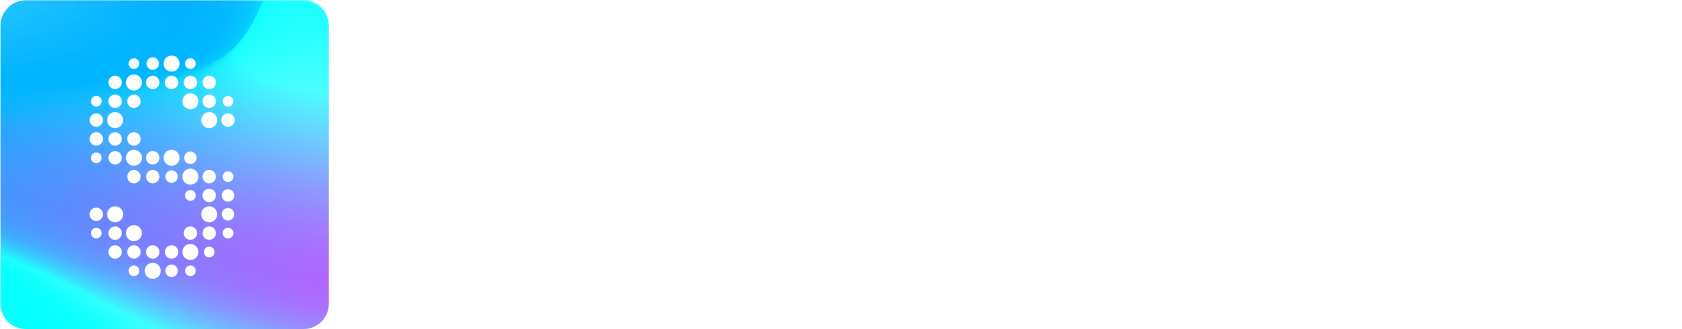 Scaler 2 EQ logo